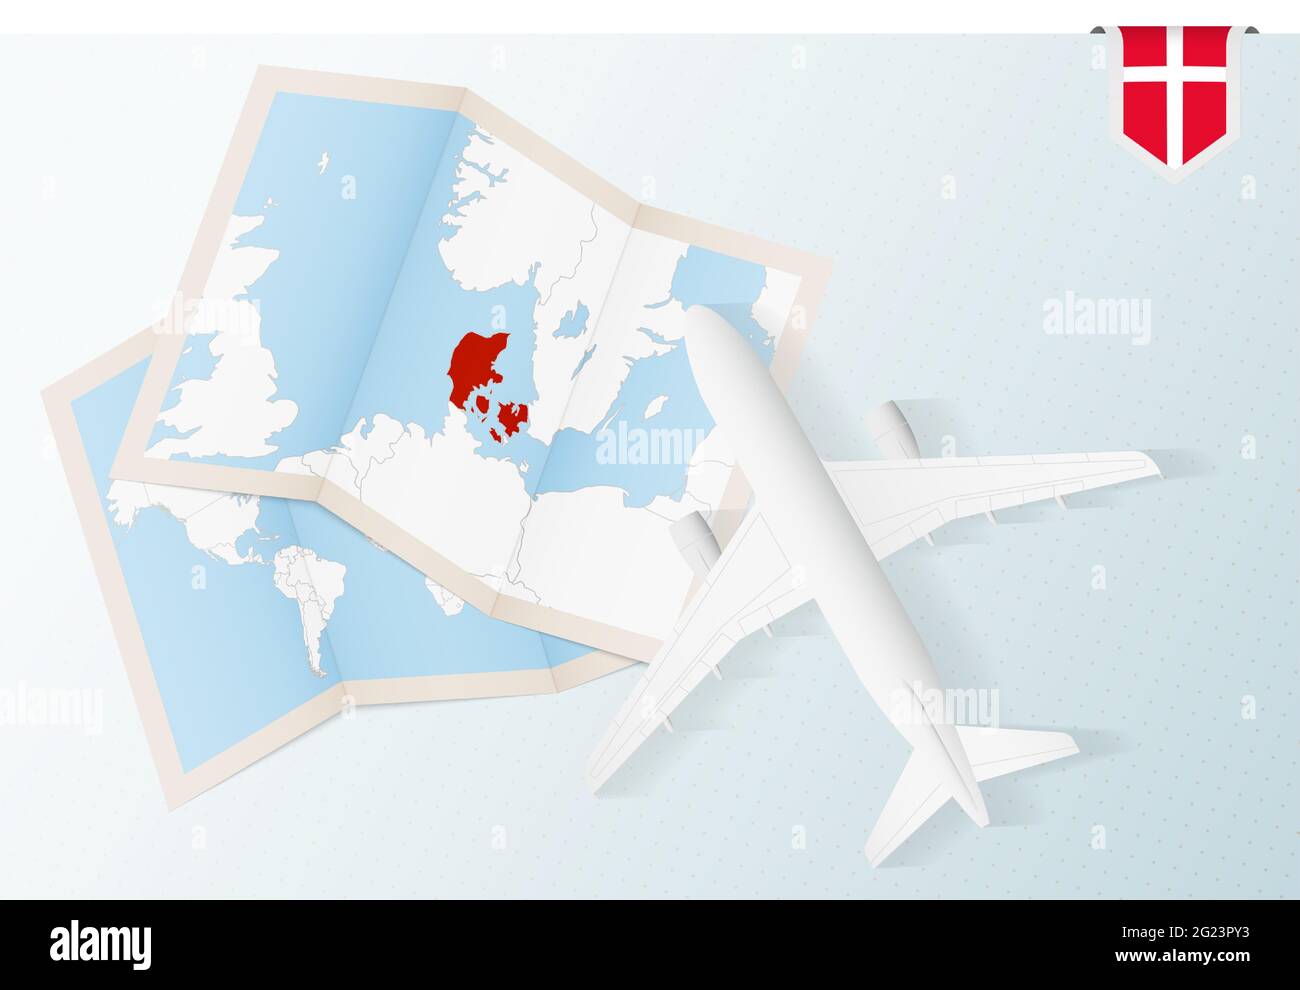 Reise nach Dänemark, Draufsicht Flugzeug mit Karte und Flagge von Dänemark. Reise- und Tourismus-Banner-Design. Stock Vektor